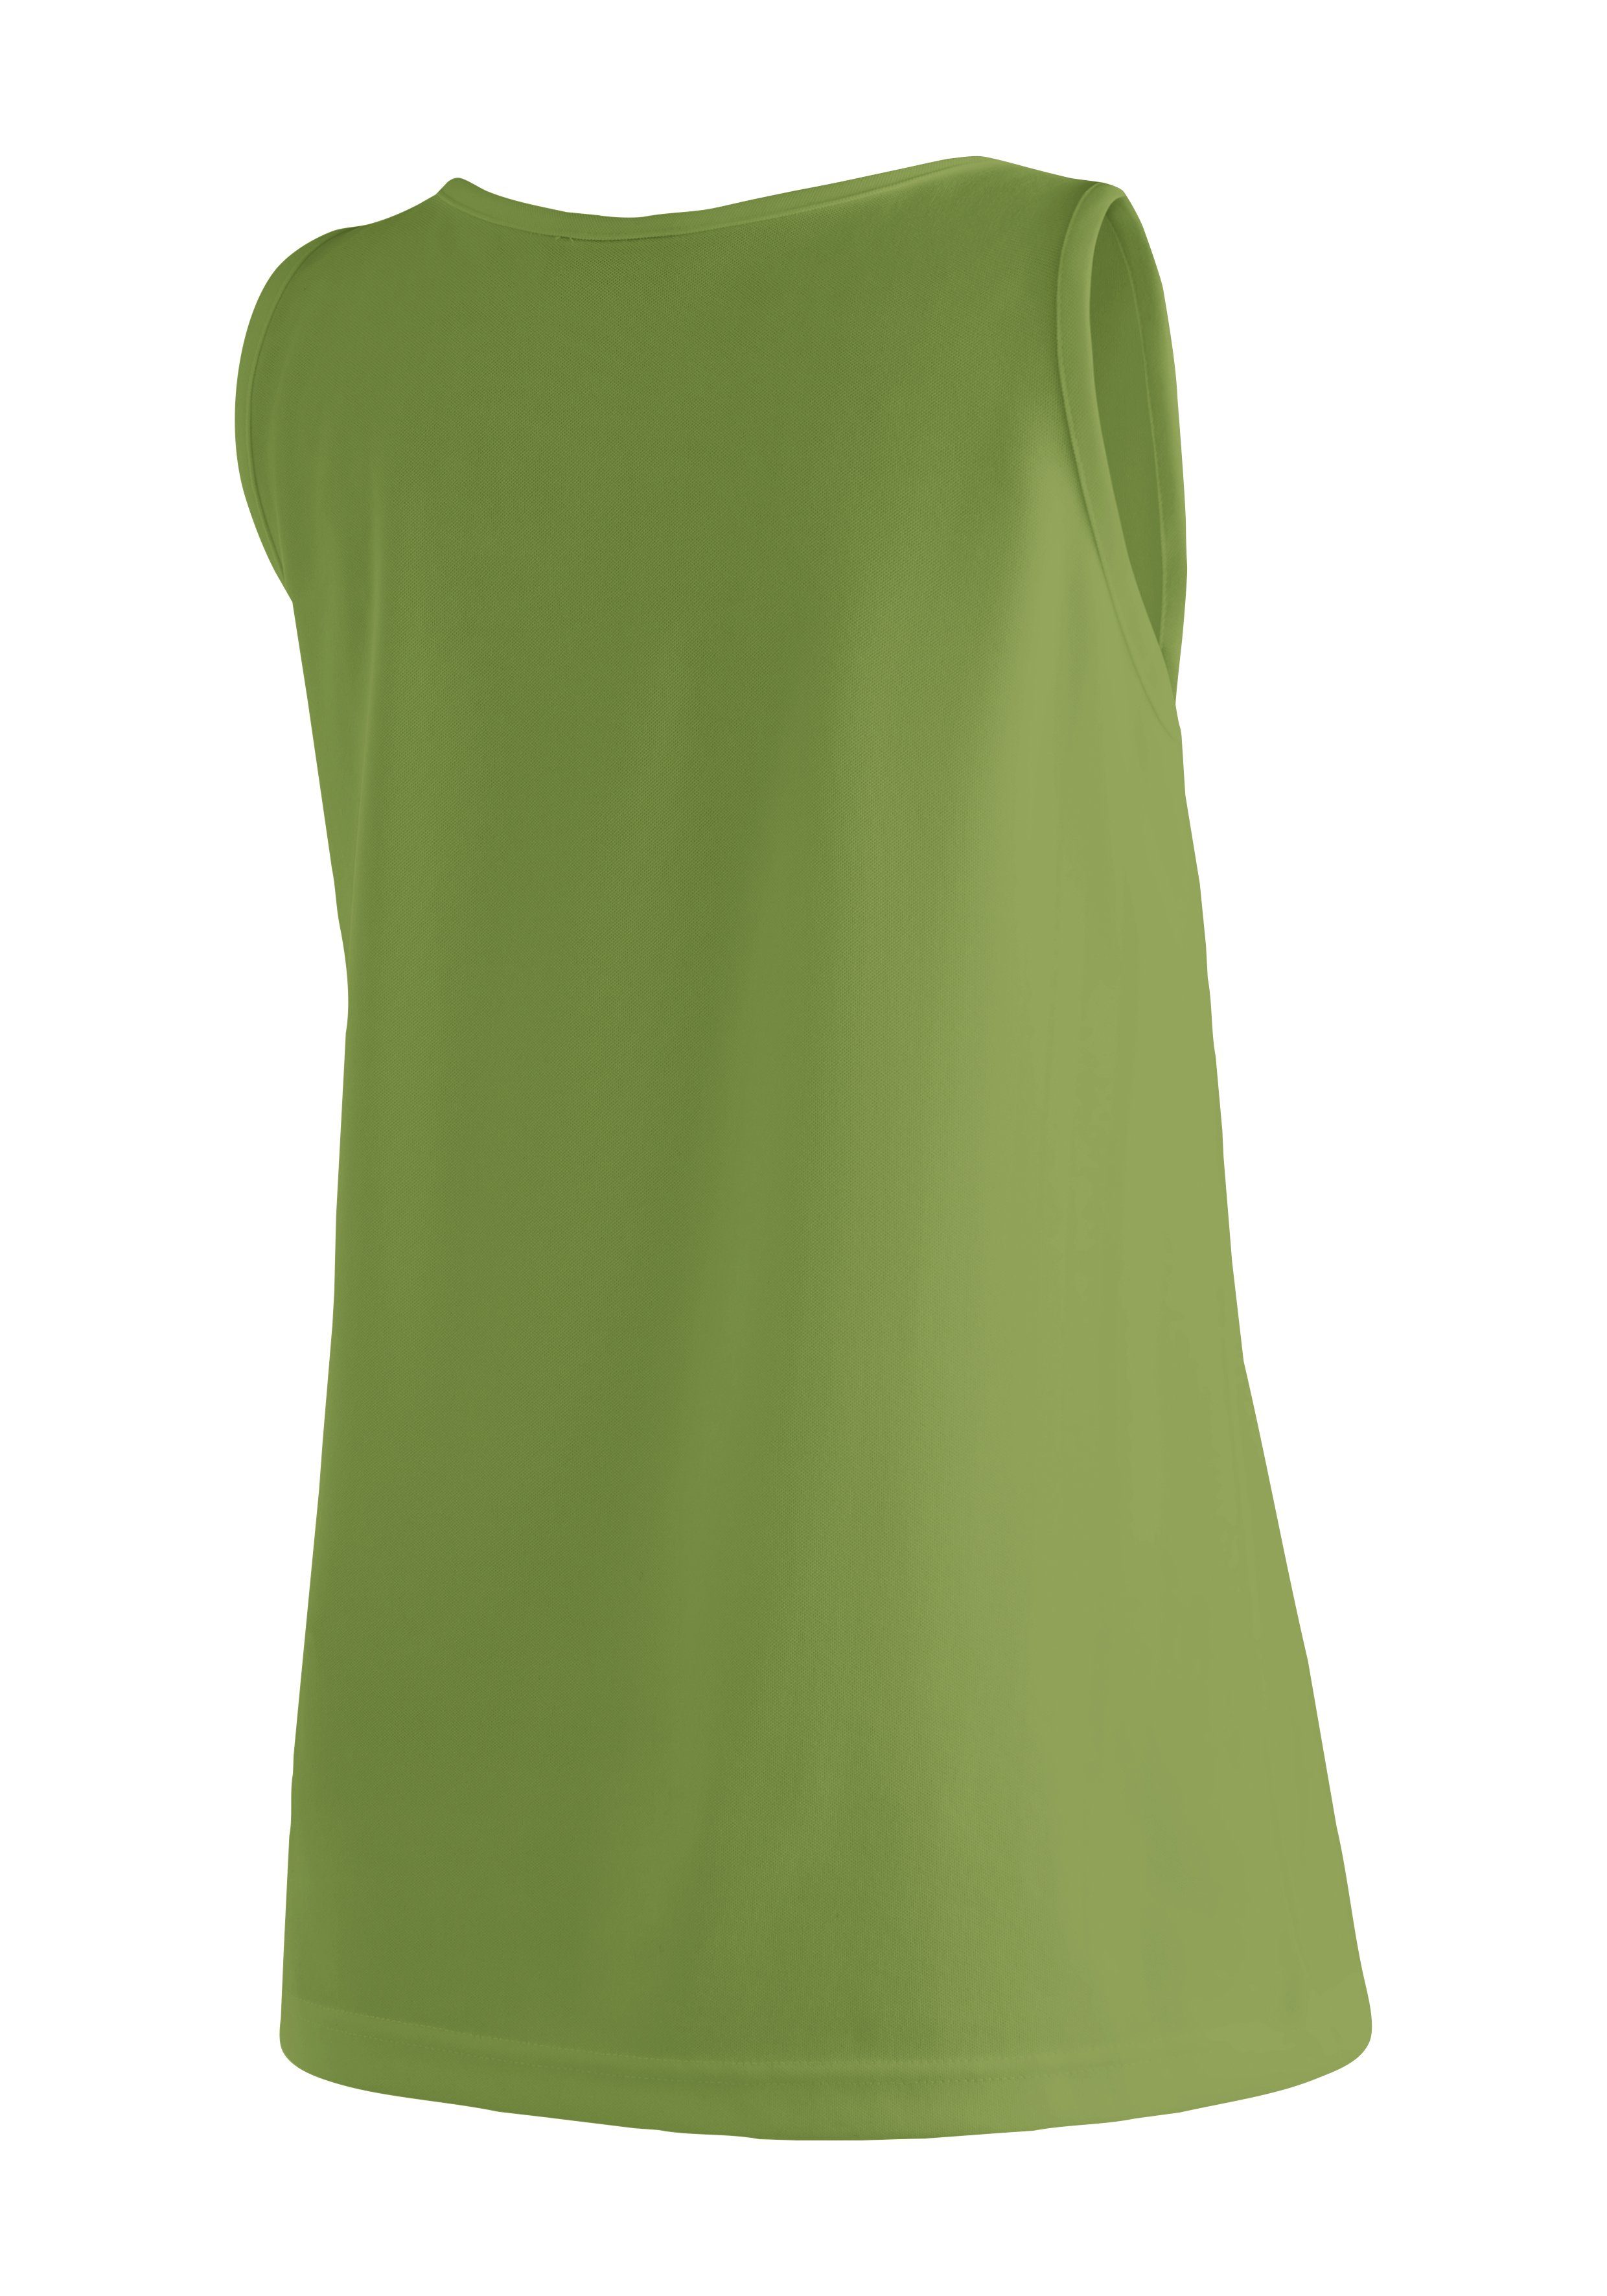 Sports Outdoor-Aktivitäten, und Sport Maier grasgrün Shirt Damen Tank-Top für Funktionsshirt Petra ärmelloses